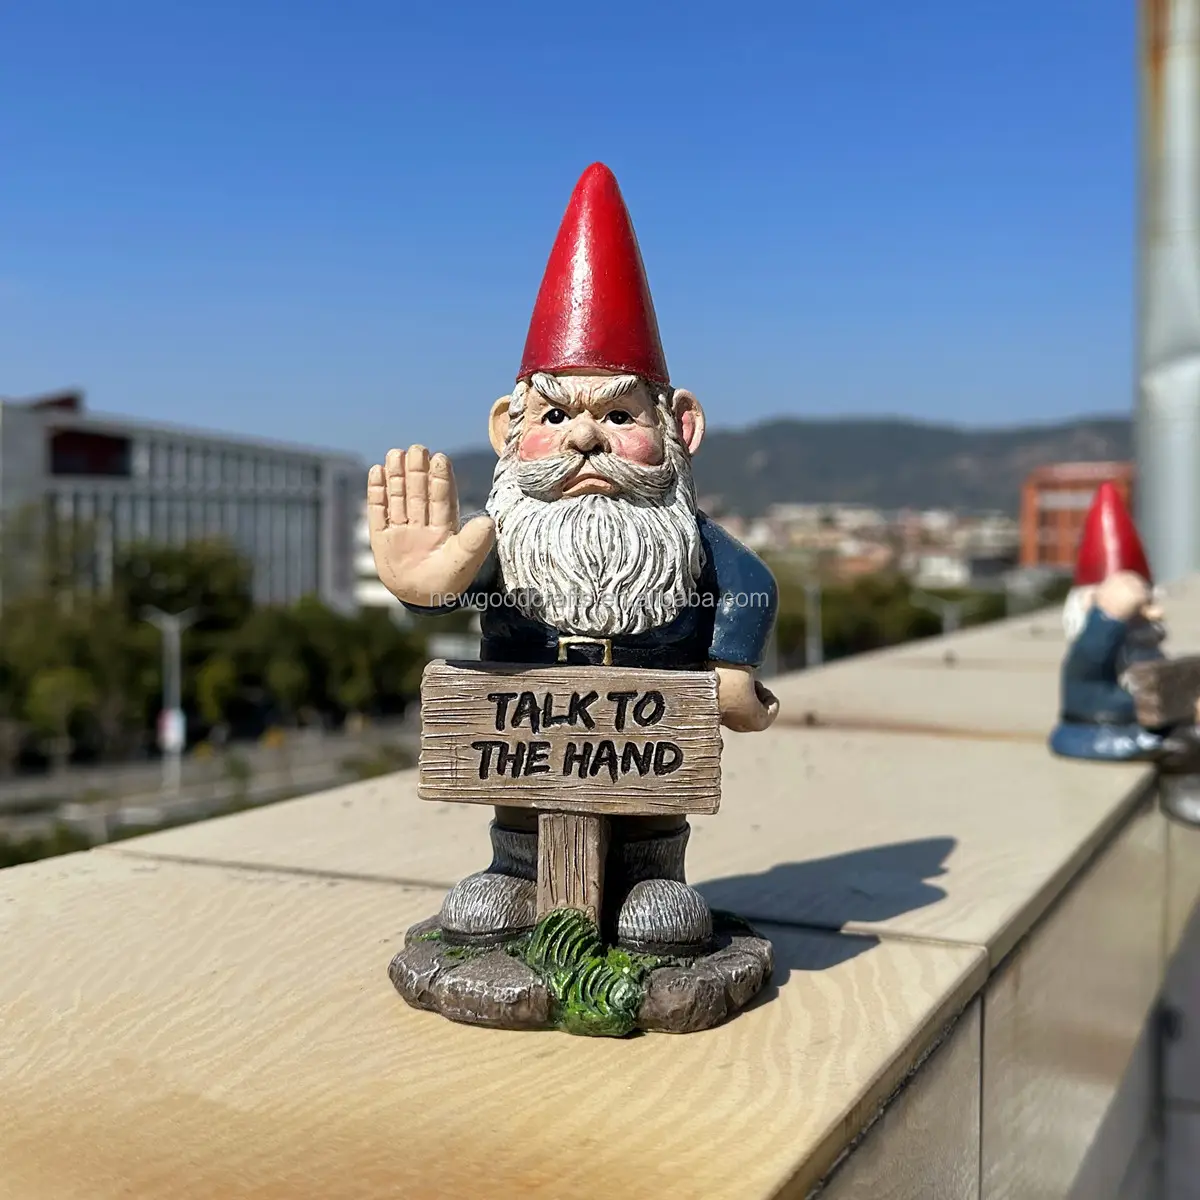 Cute Funny Resin Garden Gnome Figurine With Attitude Sign Outdoor Ornament For Garden Decor